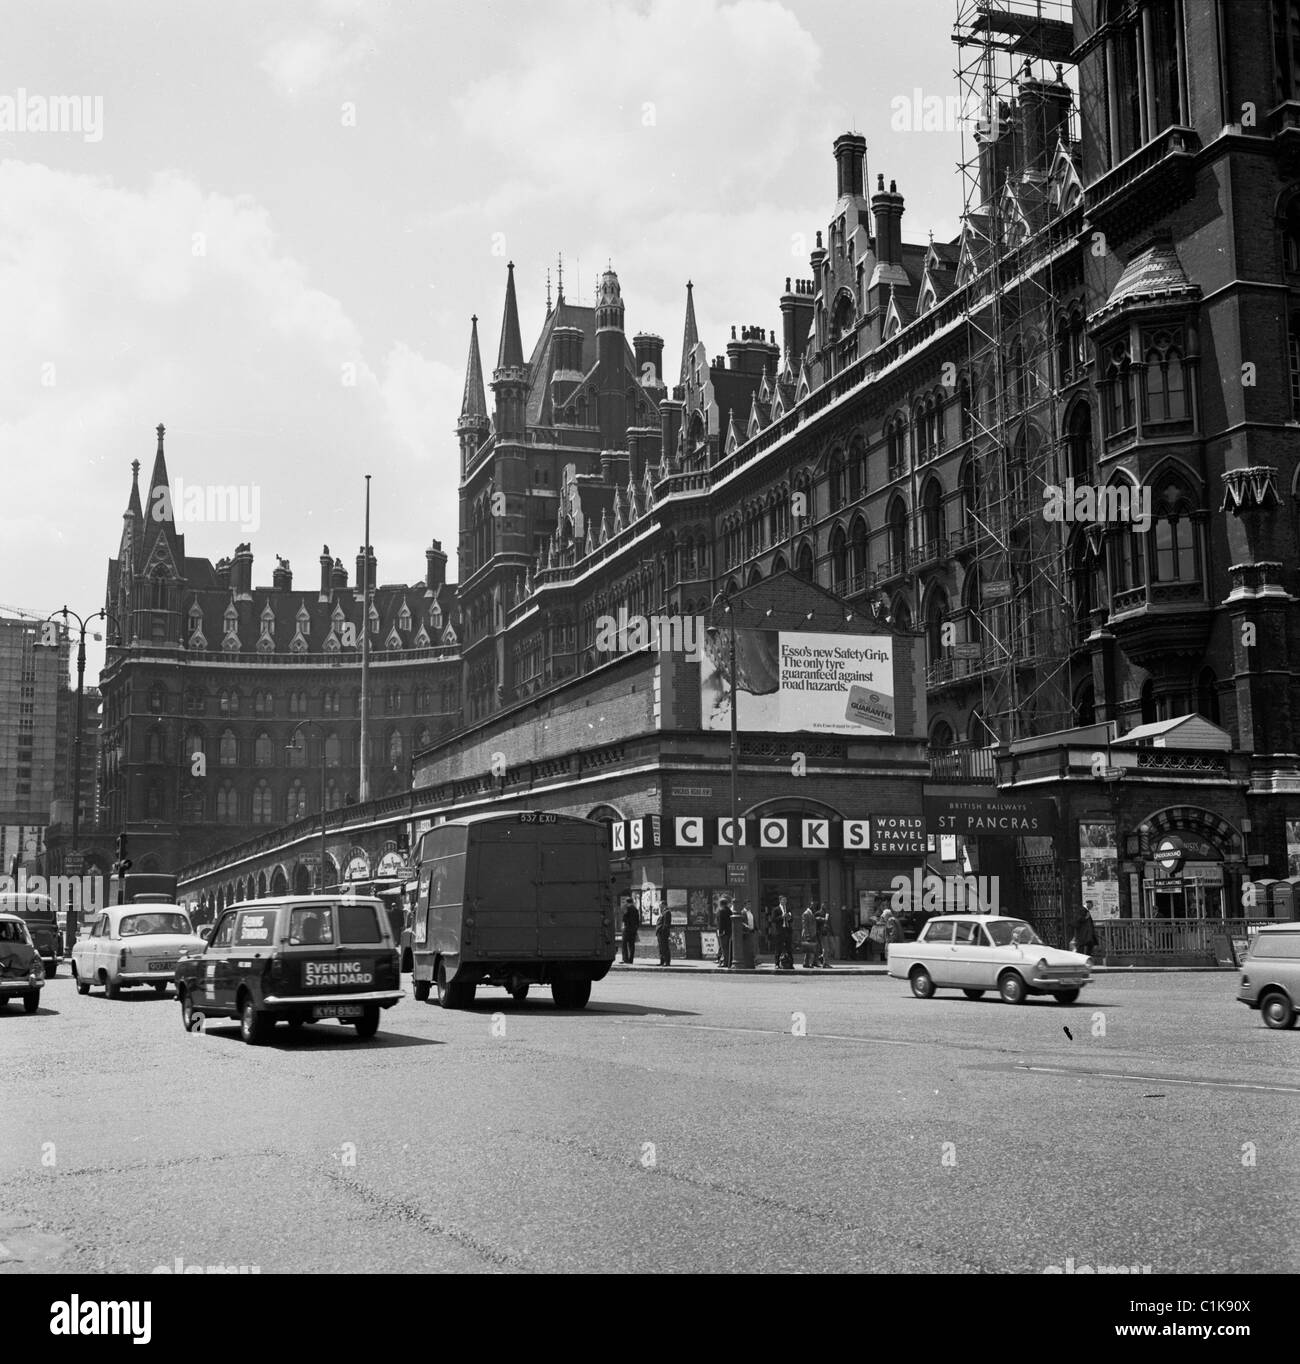 Années 1960, voitures sur la route Euston Rd, à côté du Midland Grand Hotel et de la gare de St Pancras, Londres. De style gothique, l'hôtel a ouvert ses portes en 1873. Banque D'Images